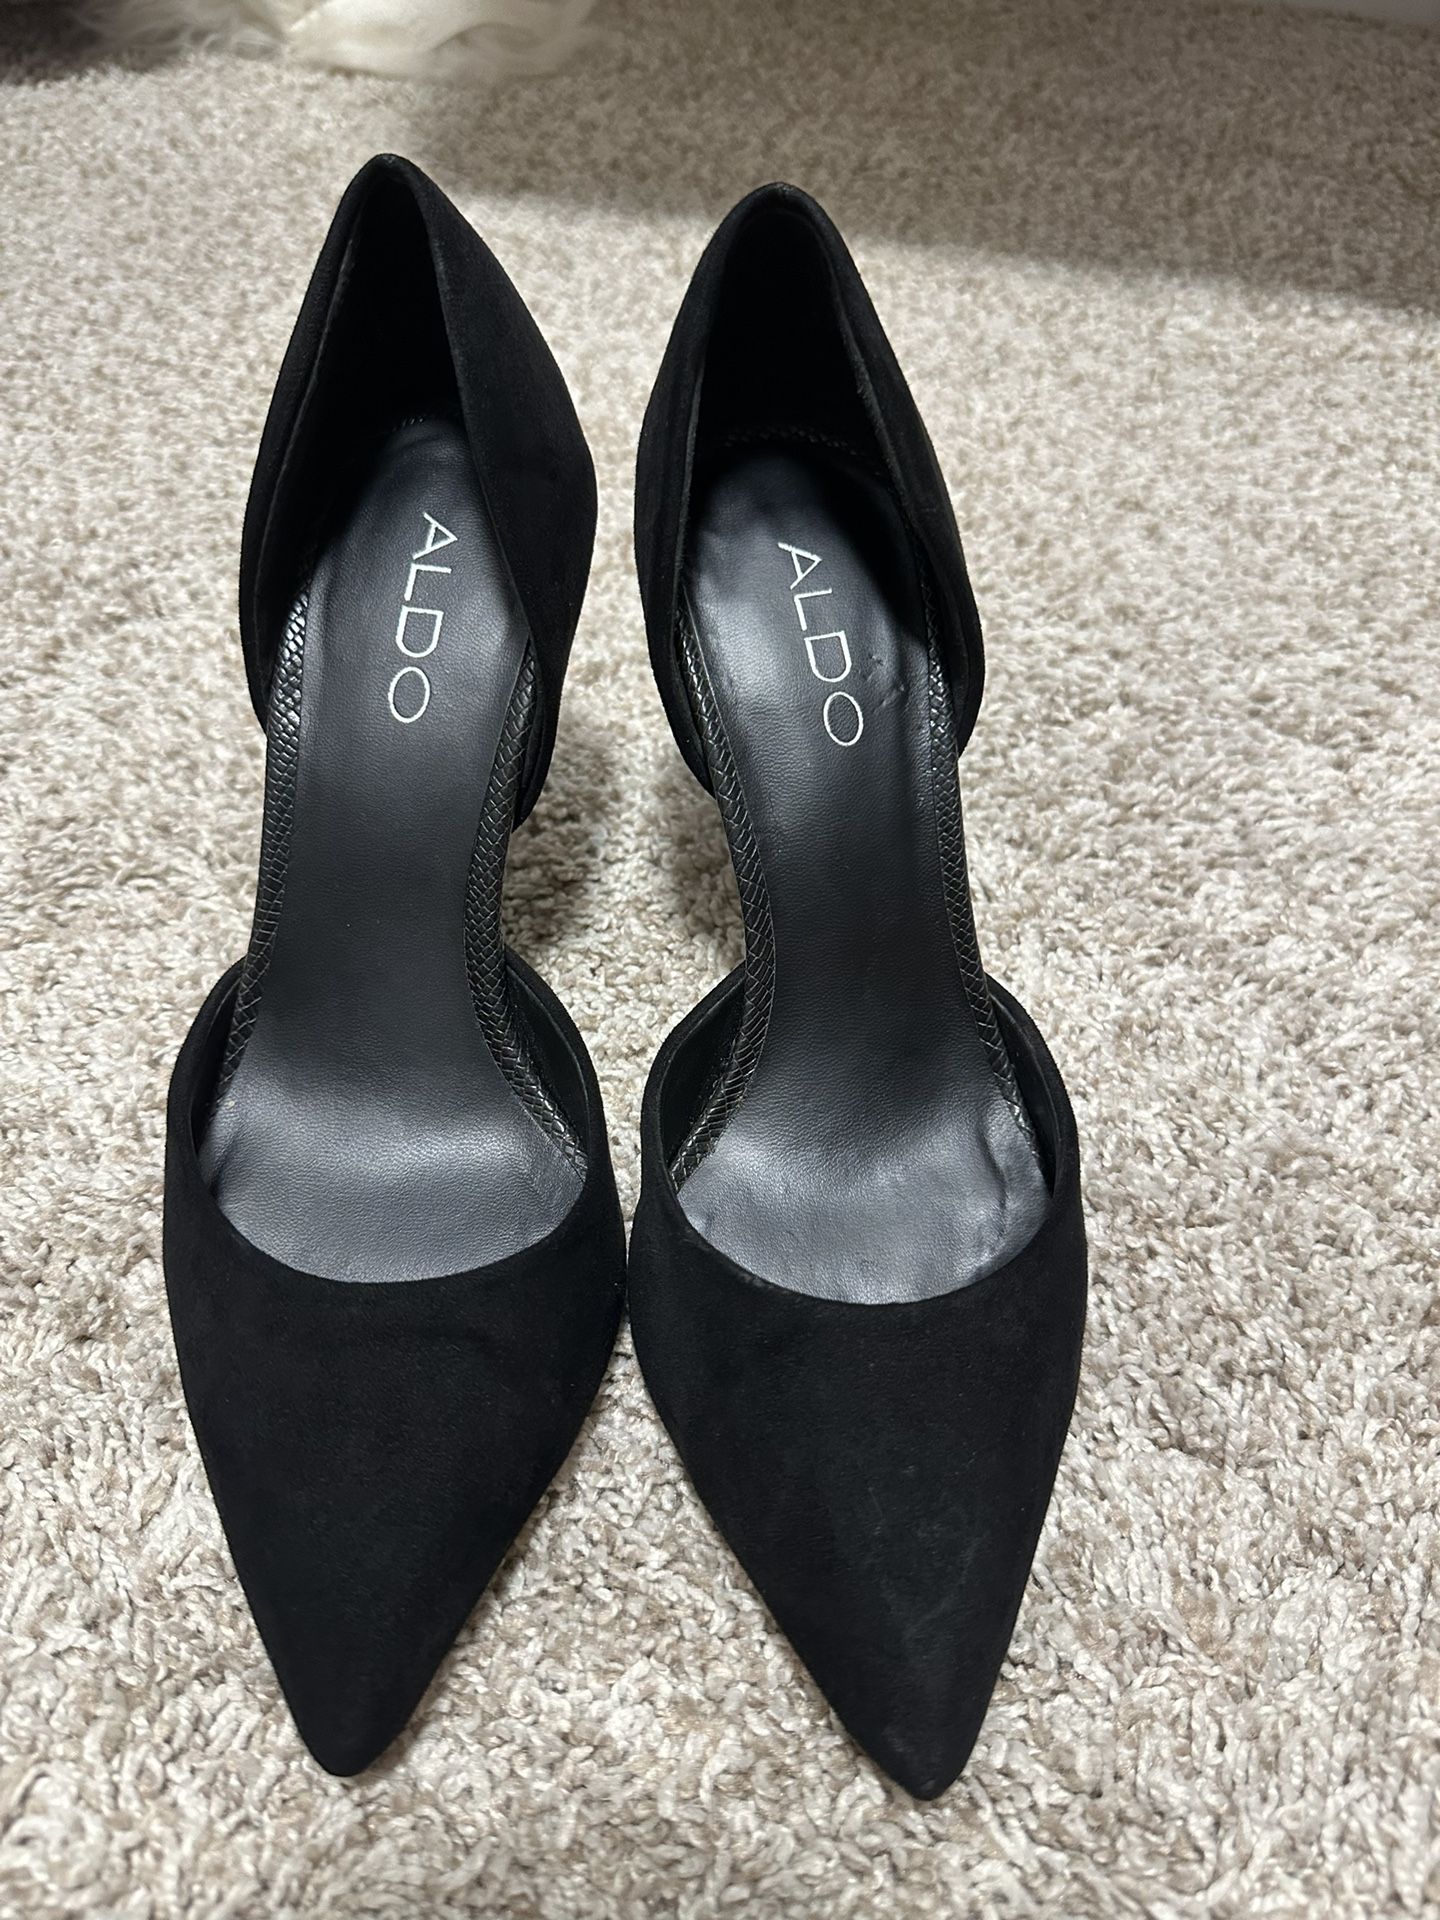 Women’s Aldo black suede heels size 6 with textured heel 